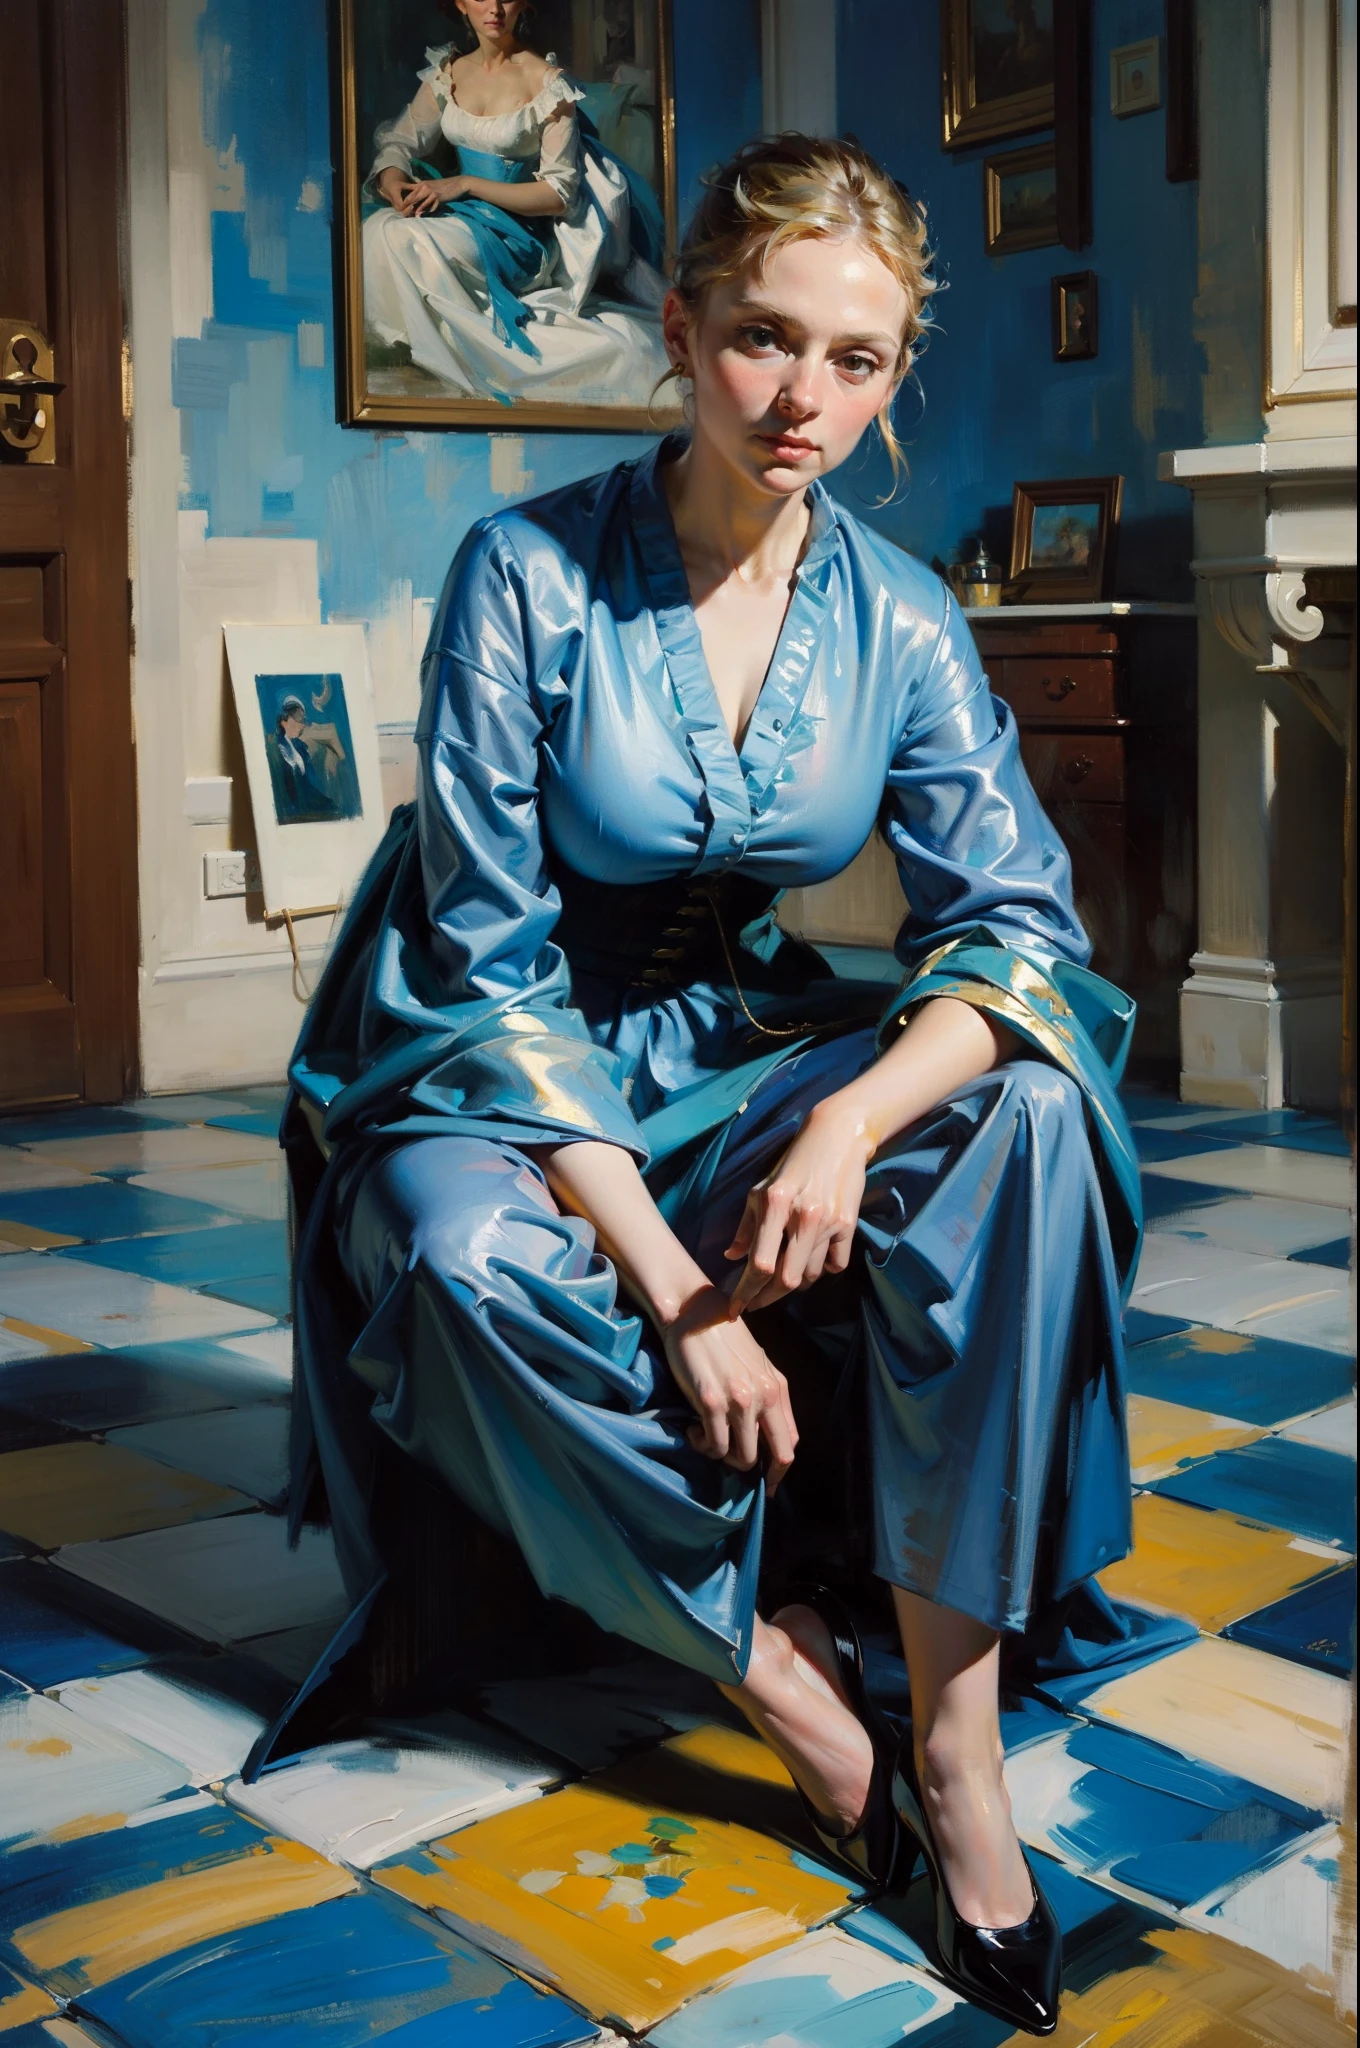 오일 페인팅, 큰 브러쉬 선, 18세기 파란색 드레스를 입은 여자, 타일 바닥에 앉아, 페인트 타일, 전신 인물화, 피카소에서 영감을 받음 모네에서 영감을 받음 WLOP에서 영감을 받음, 수상 작품, 거장 화가의 유화, 상세한 브러시 스트로크, 깊은 색상 값, 진정한 인상, 숨이 막힐 정도로 아름다운